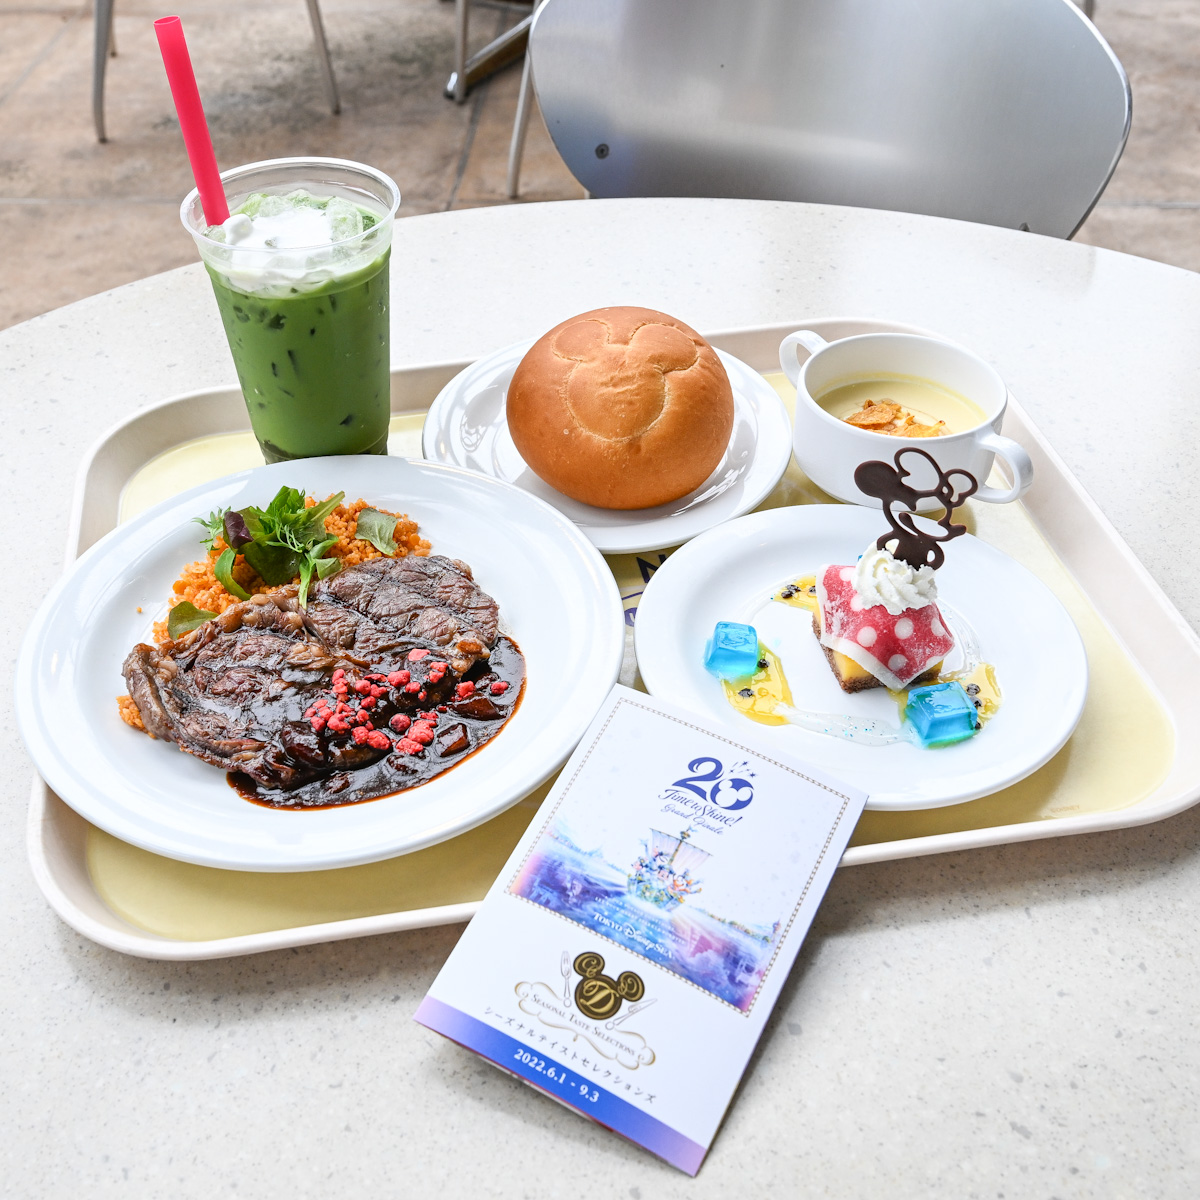 ミニーマウスのデザートも ホライズンベイ レストラン 22夏 東京ディズニーシー周年スペシャルセット